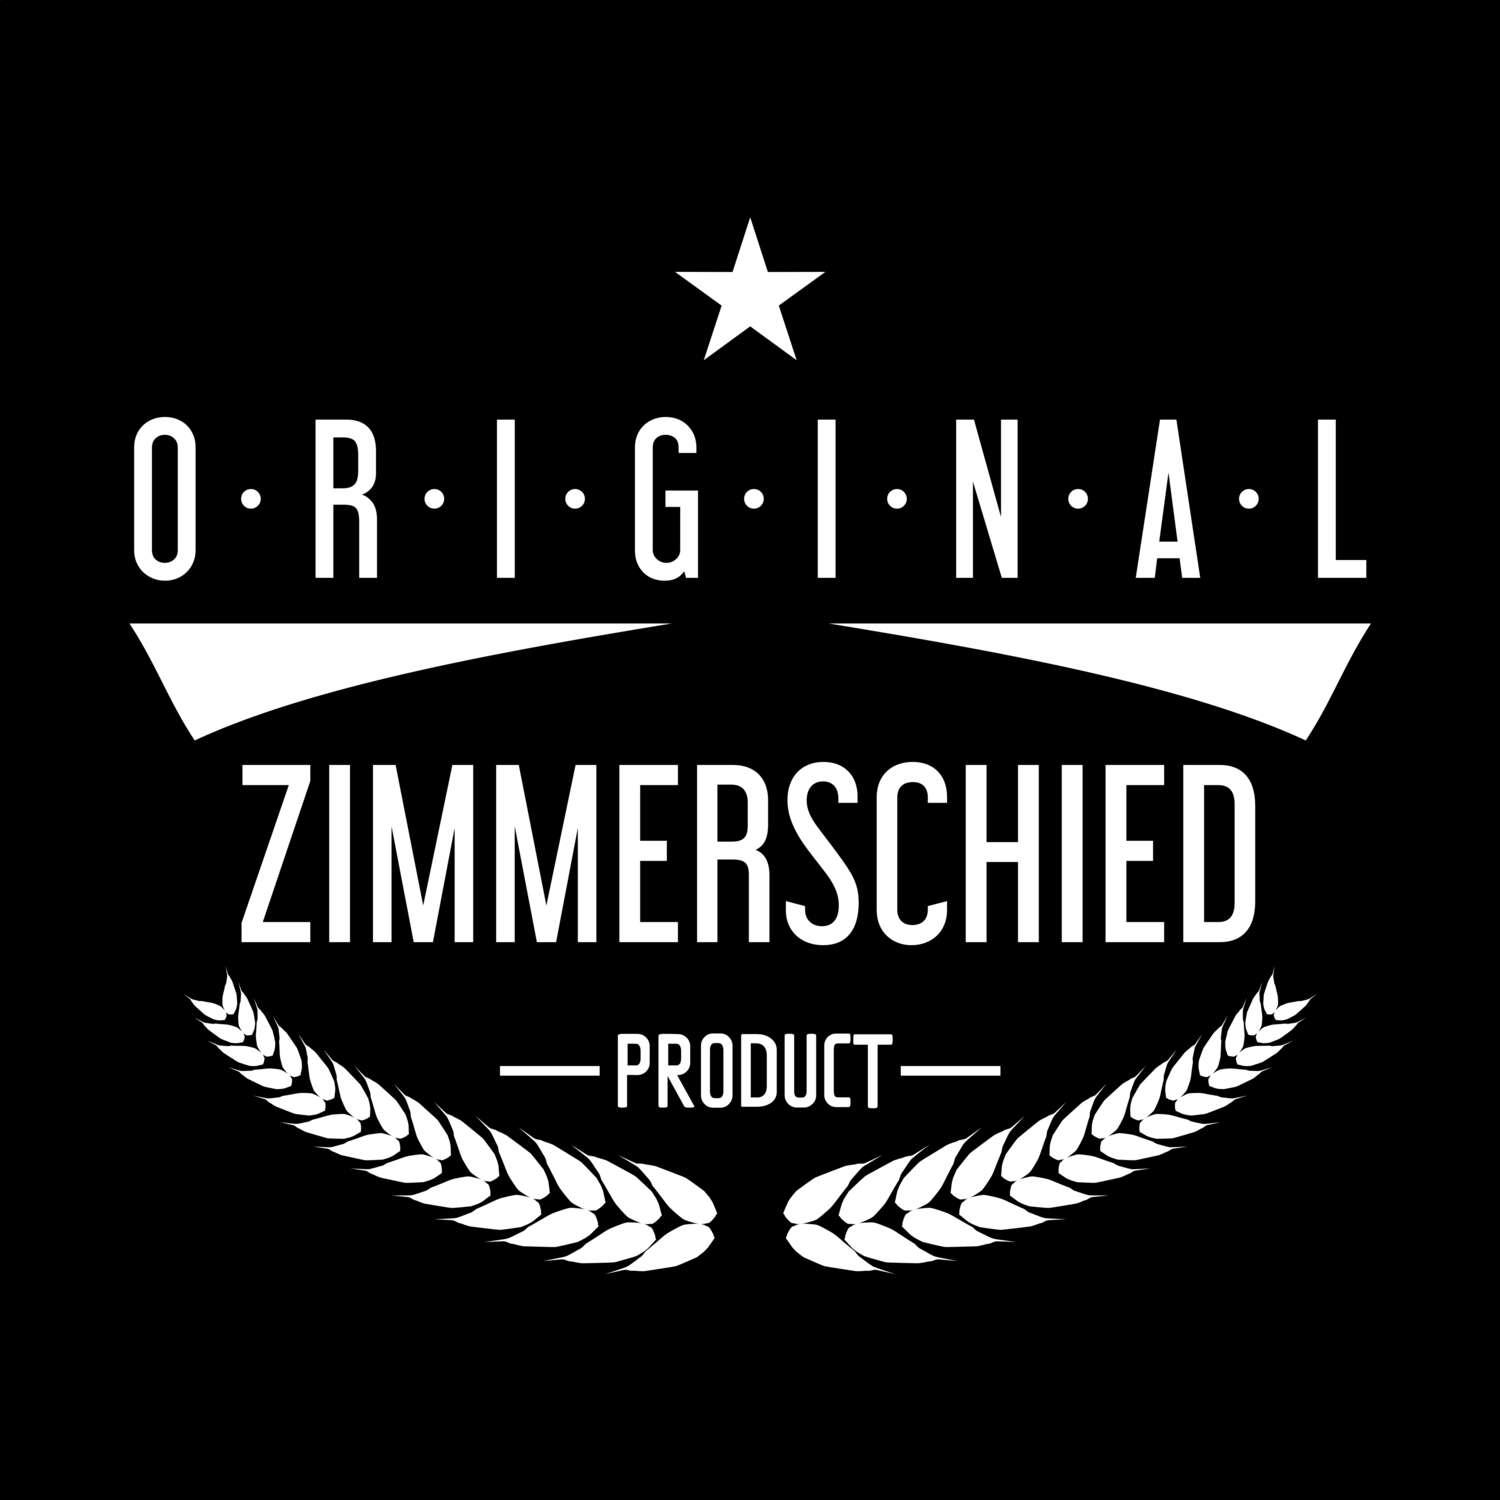 Zimmerschied T-Shirt »Original Product«